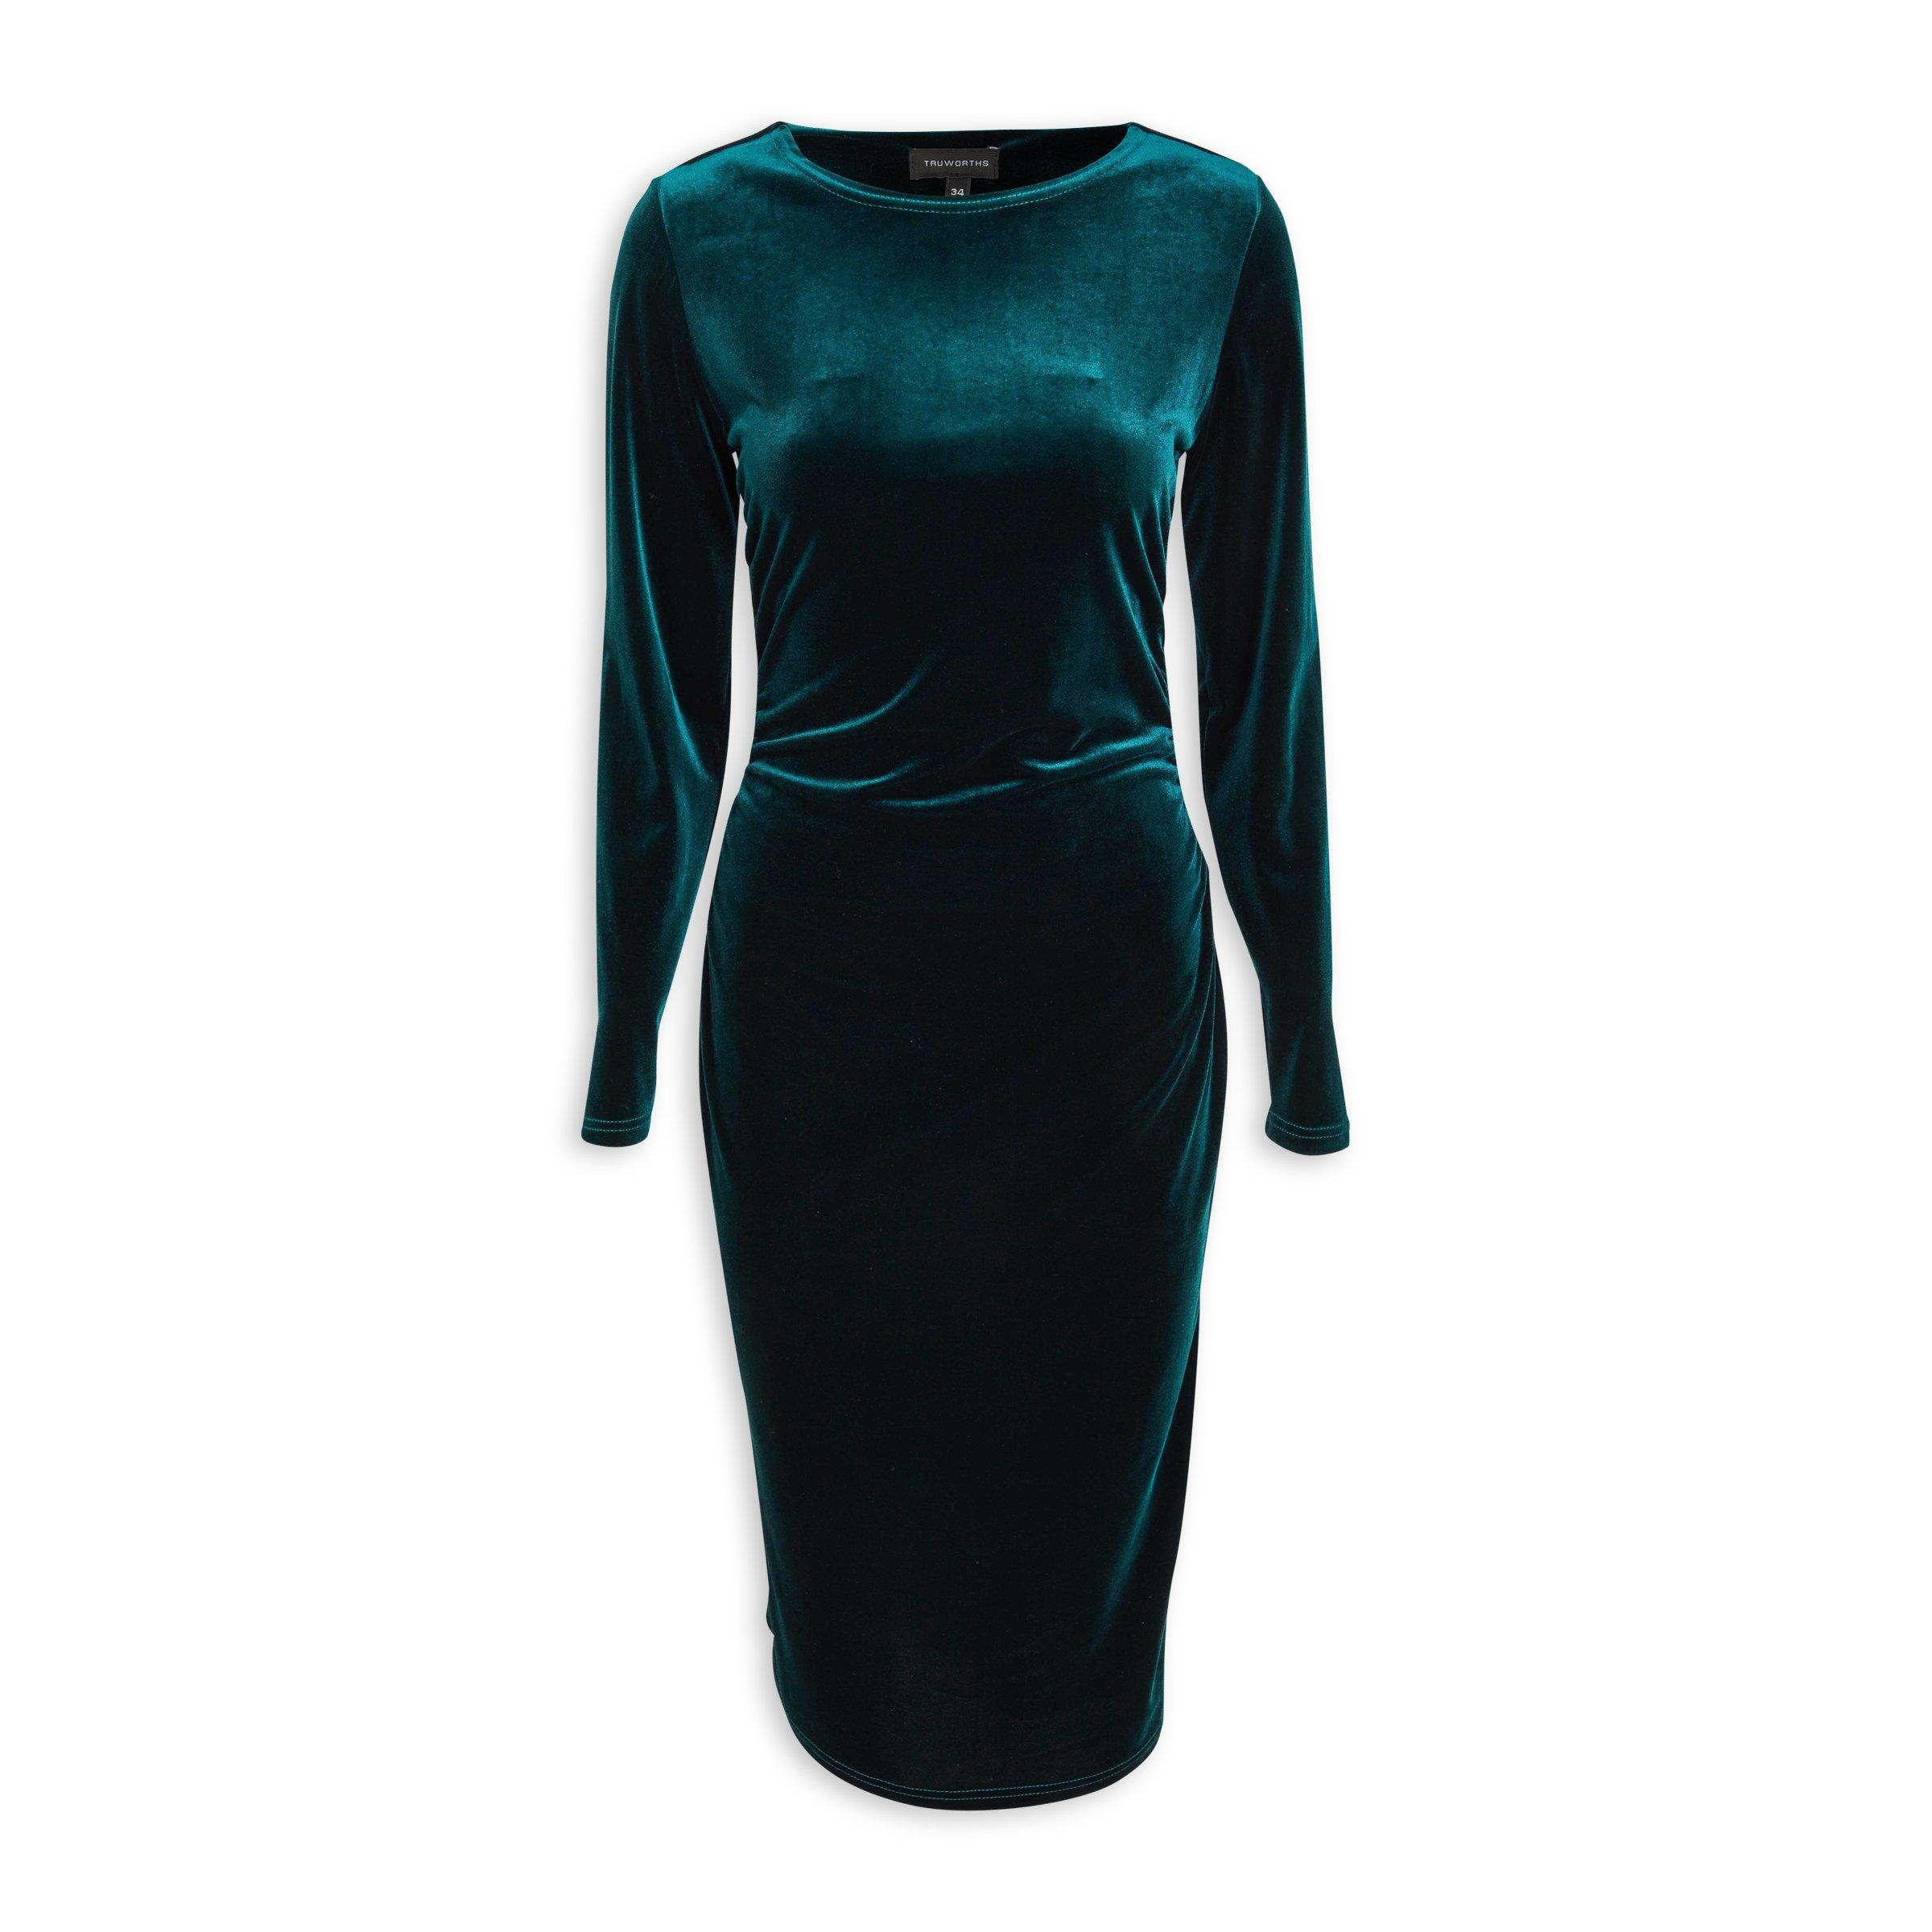 Truworths Emerald Green Bodycon Dress (3097513) | Truworths.co.za